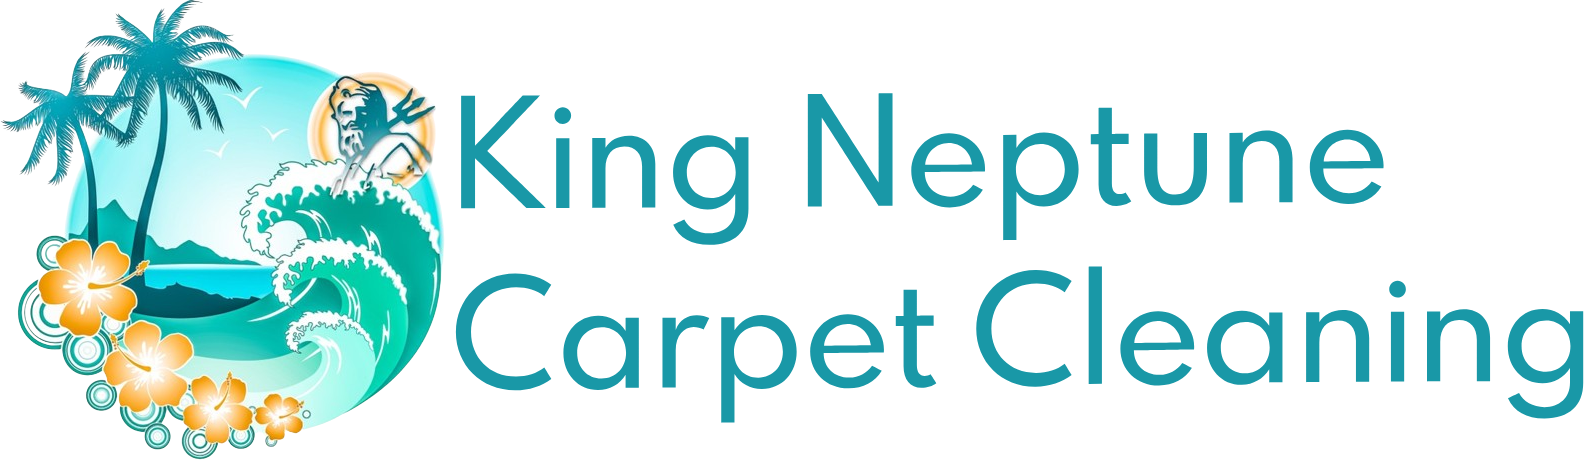 king-neptune-carpet-cleaning-logo